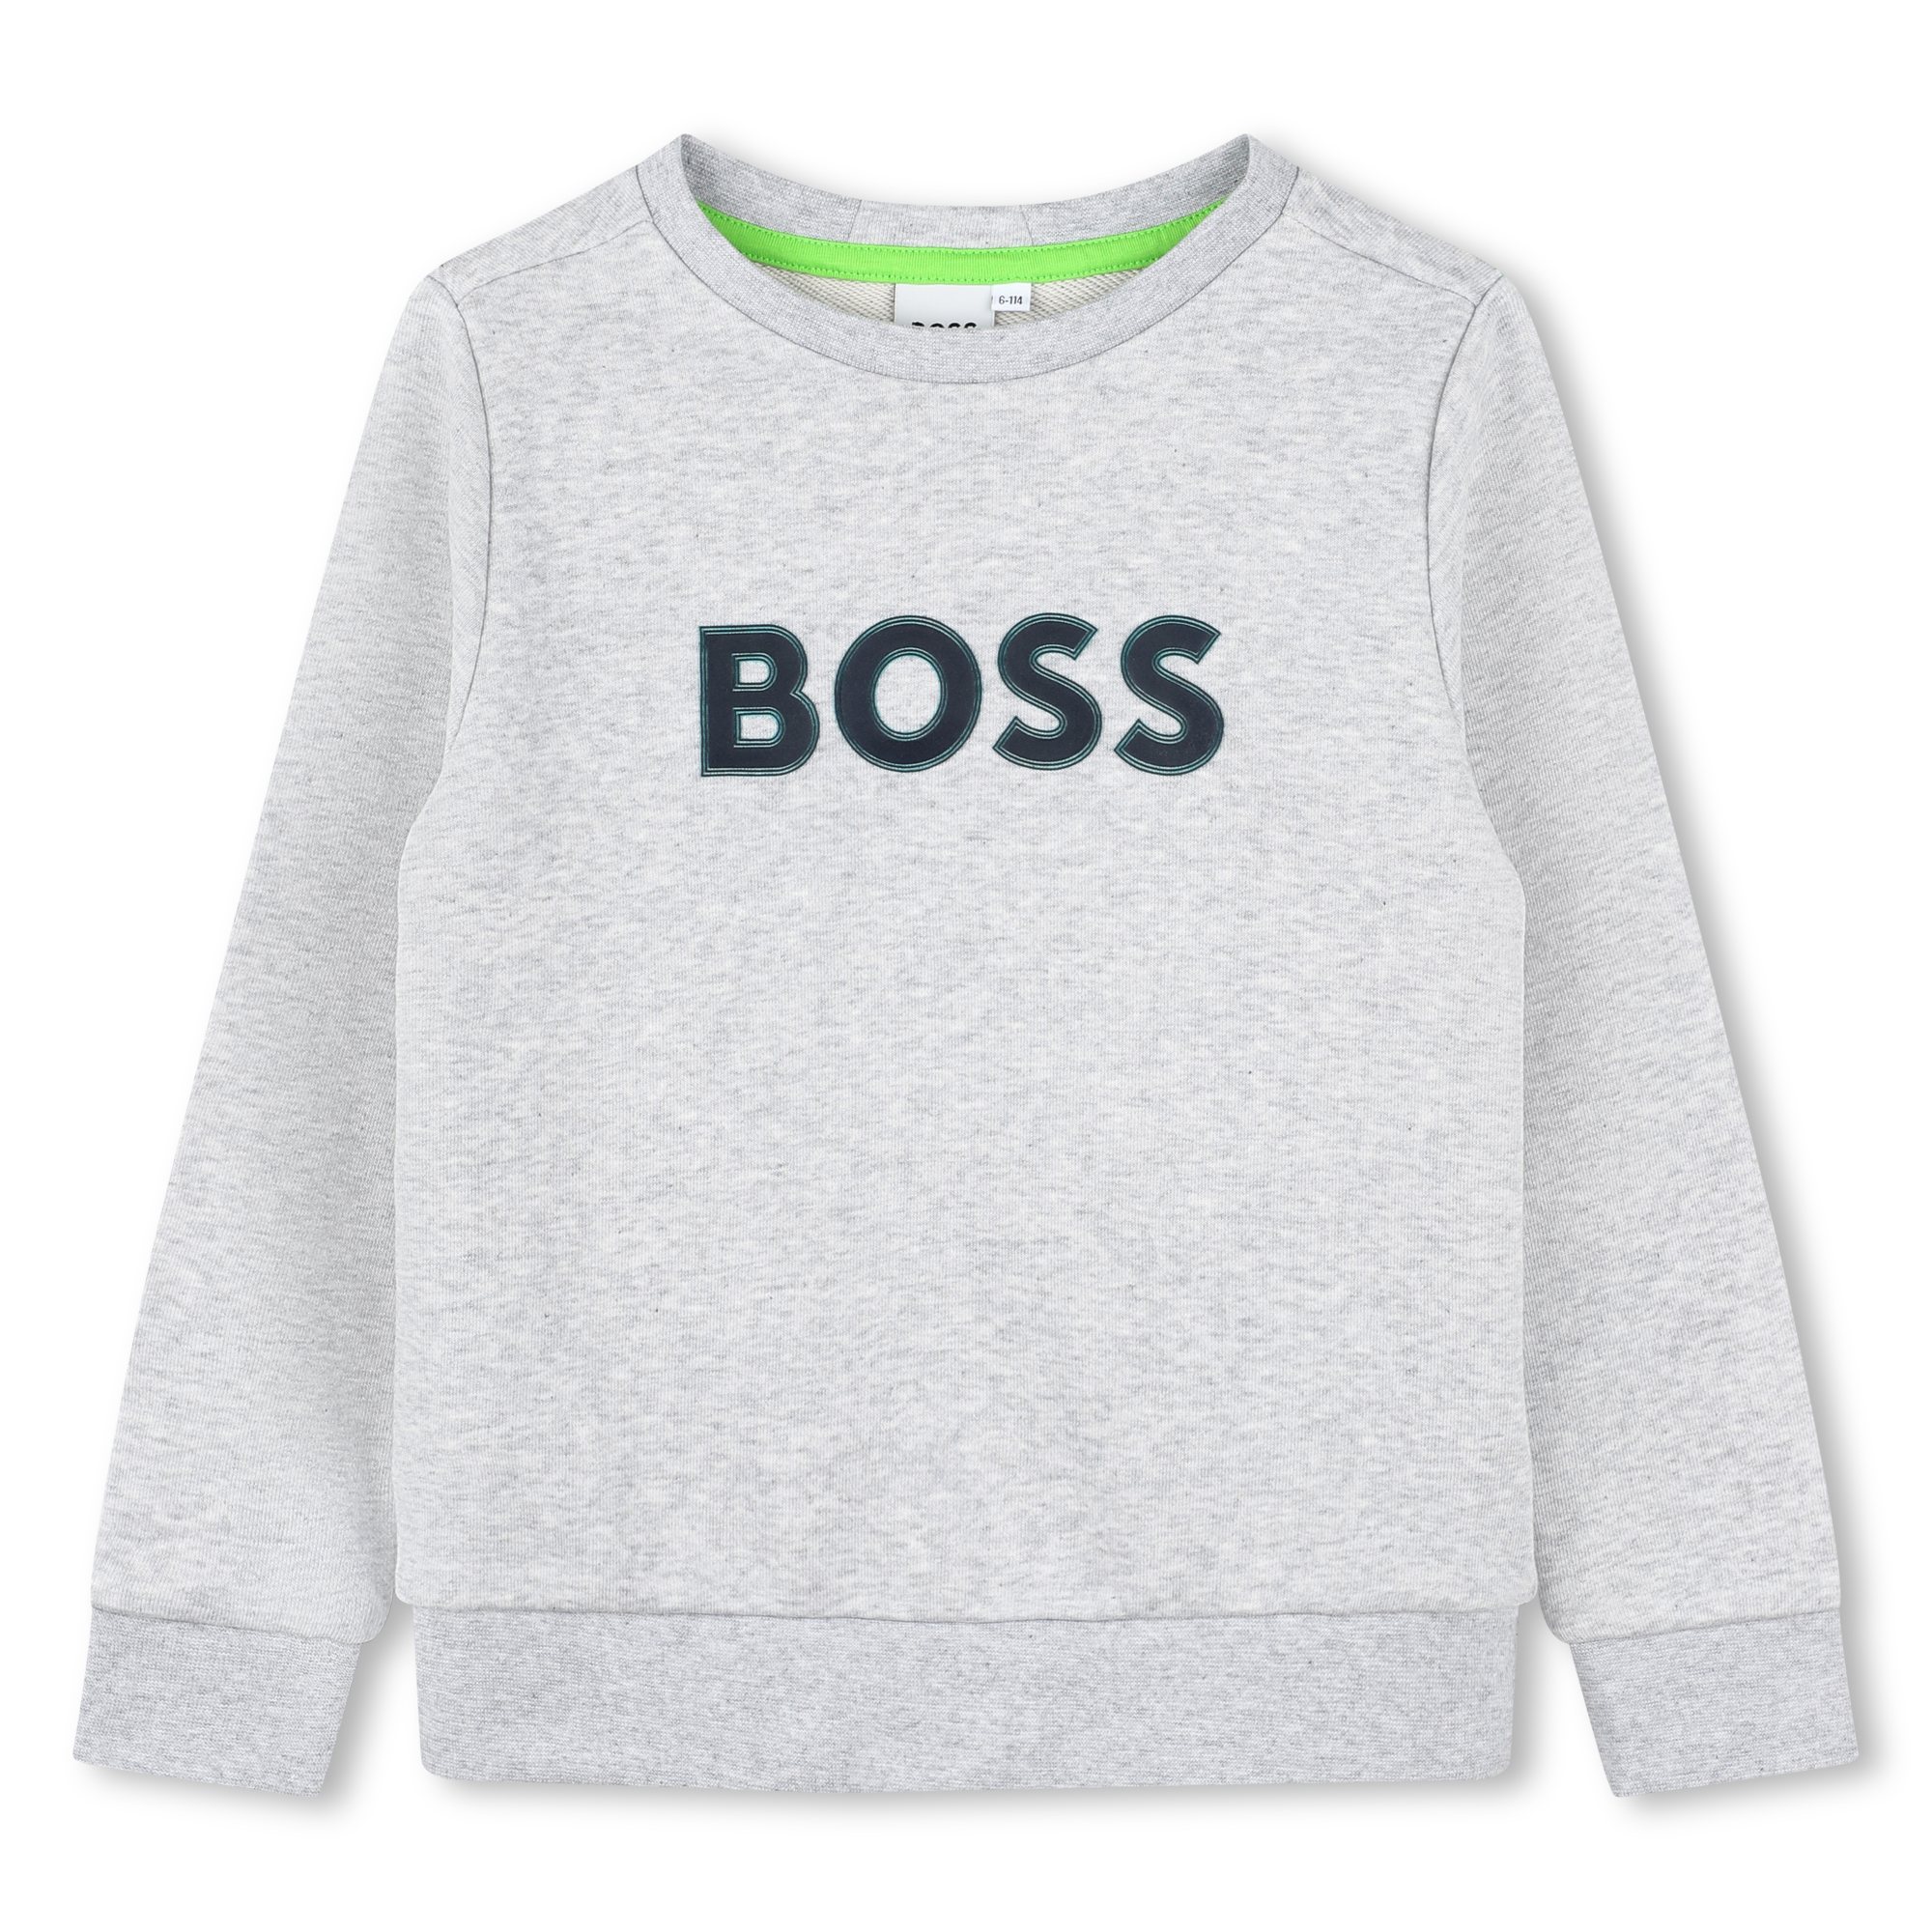 Tweekleurige sweater met logo BOSS Voor